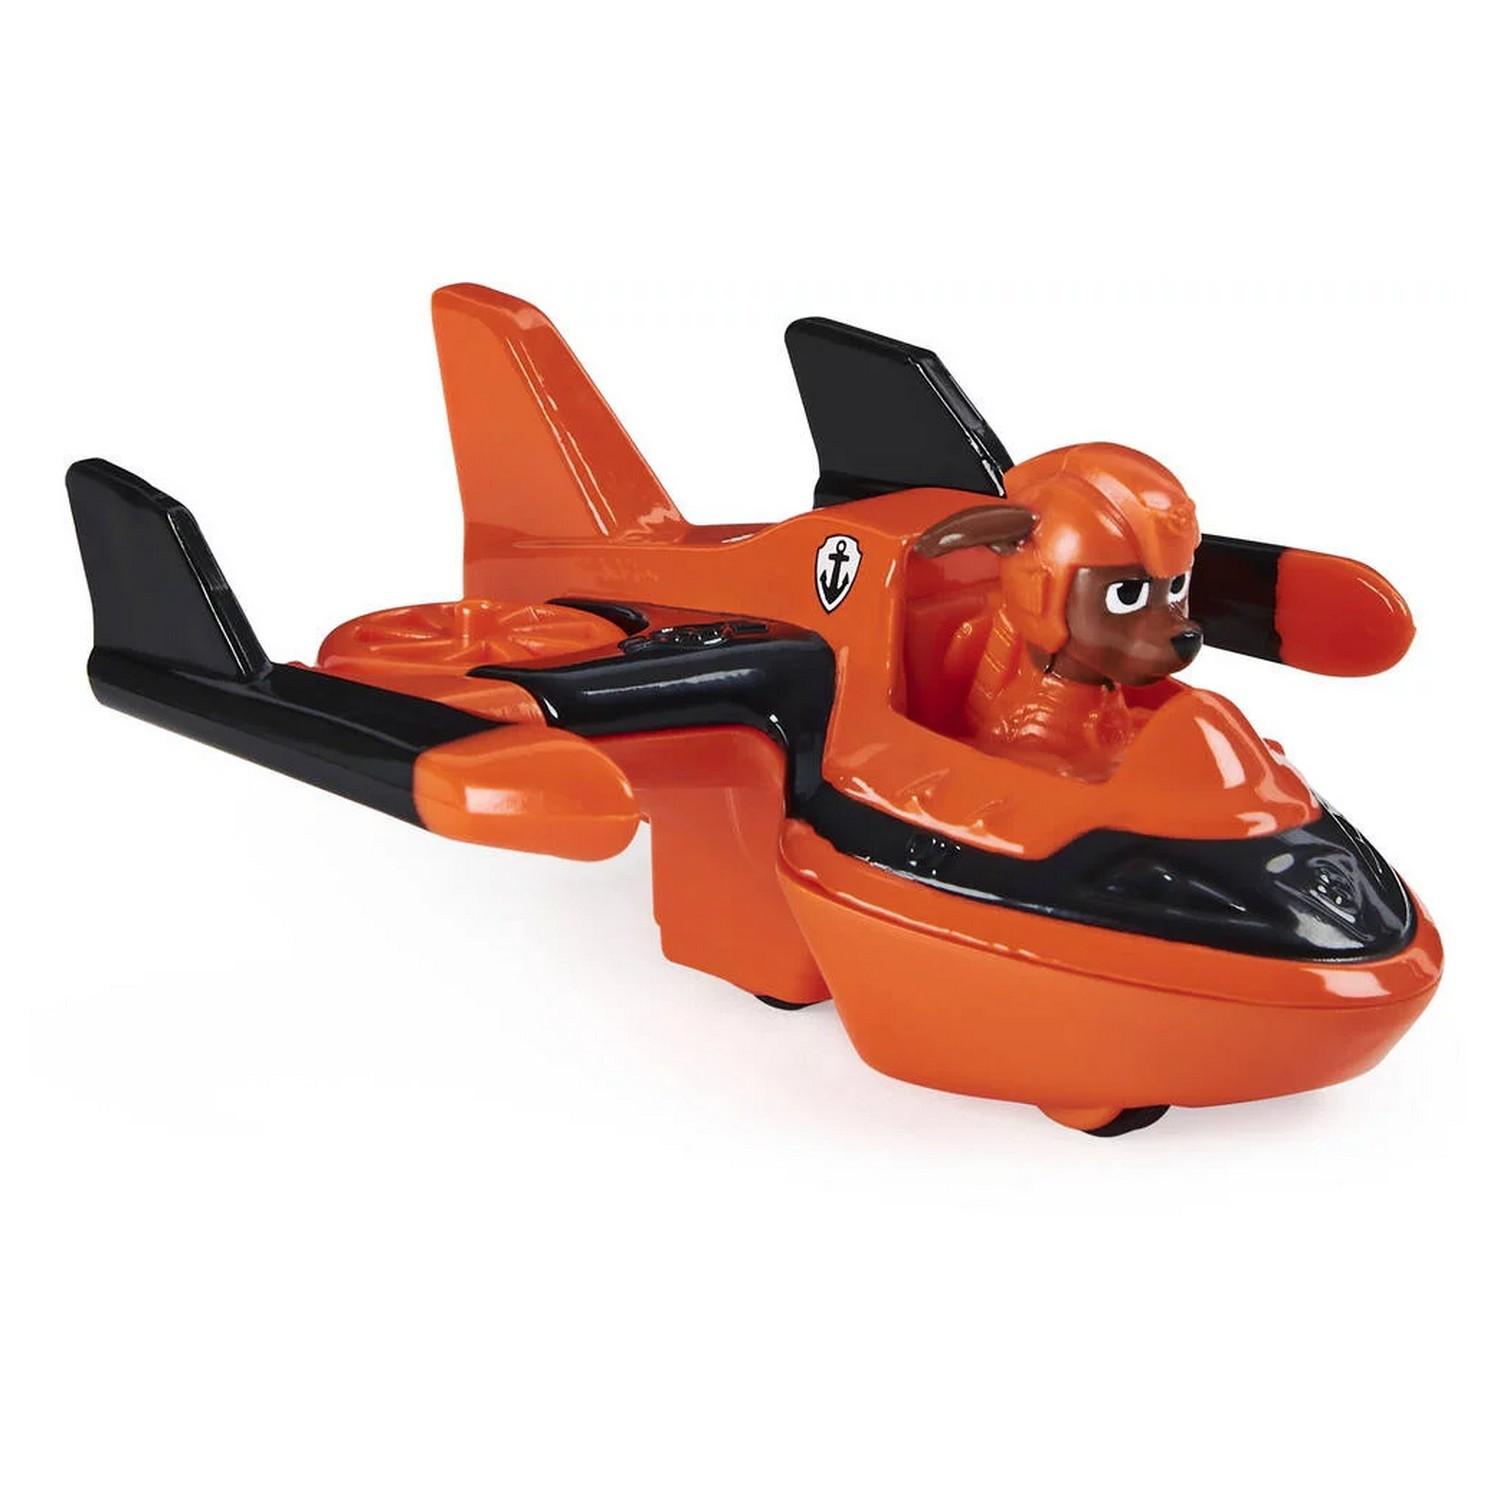 Avion stella porteur activites, jouets 1er age